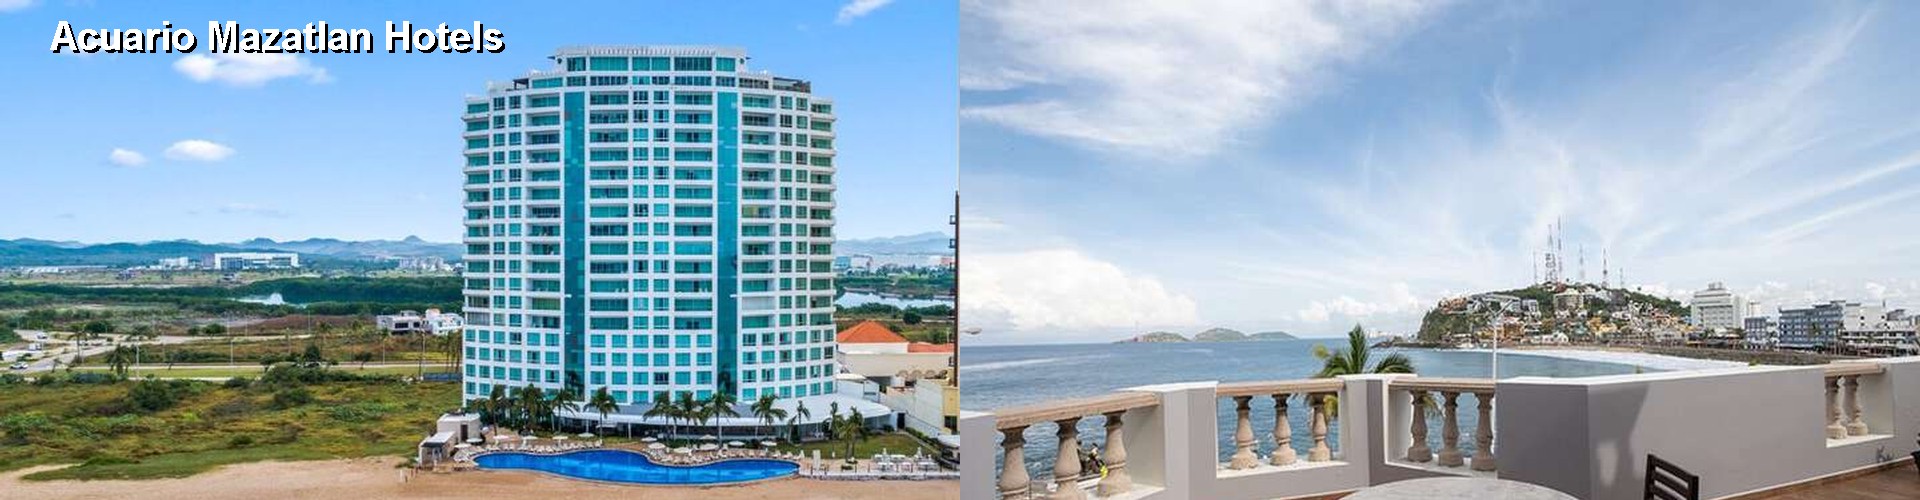 5 Best Hotels near Acuario Mazatlan